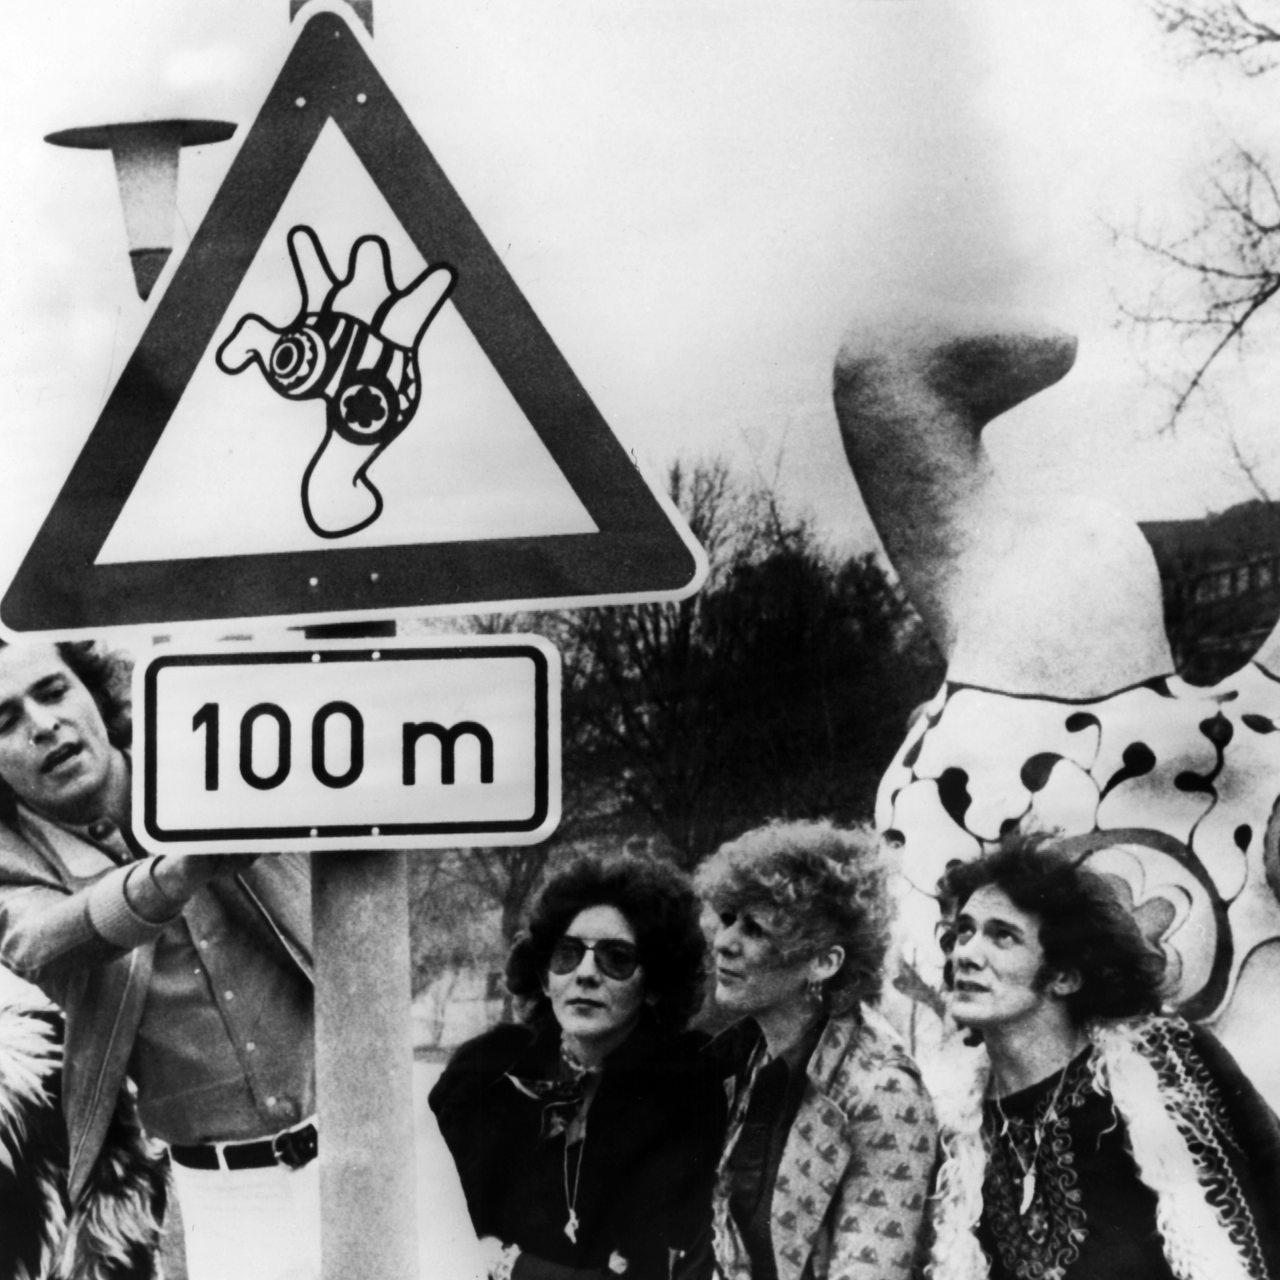 Befürworter der umstrittenen "Nana"-Skulpturen in Hannover bringen am 20.03.1974 ein Warnschild an das Autofahrer und Passanten vor den Plastiken warnen soll.